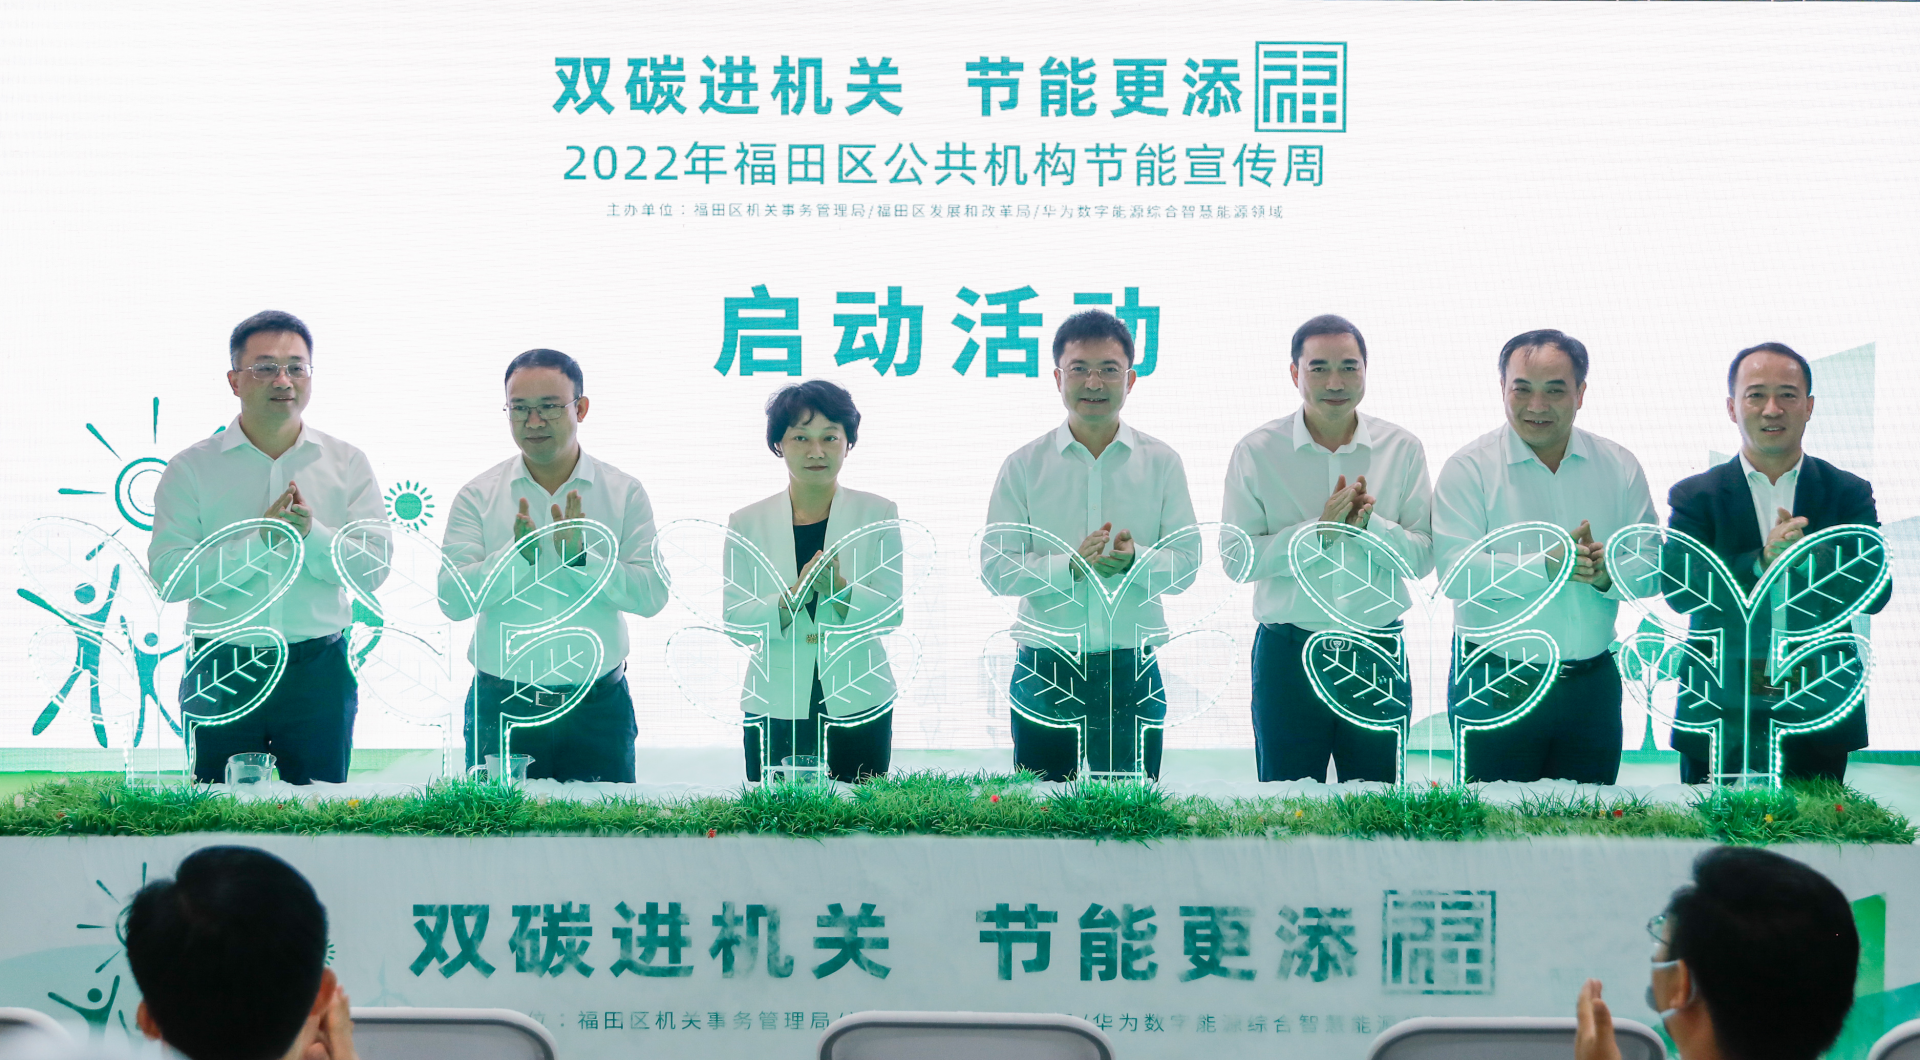 品尝“太阳能的味道”！“双碳进机关，节能更添‘福’”2022年福田区公共机构节能宣传周启幕